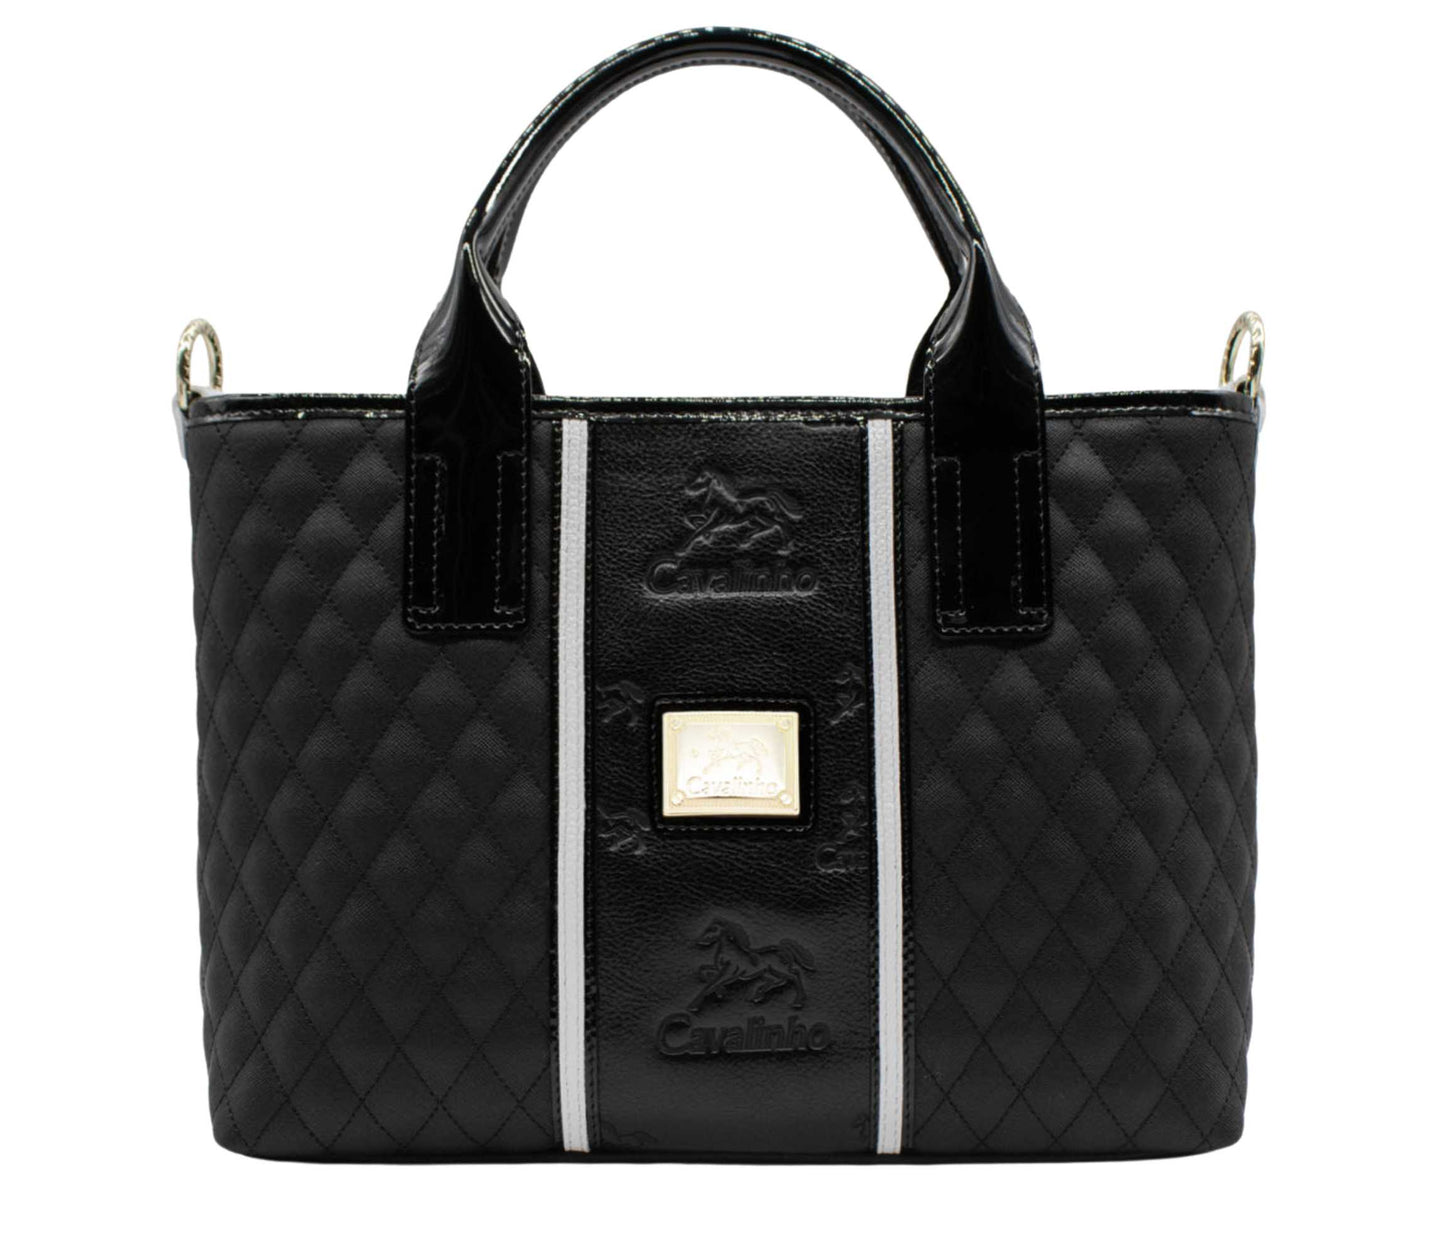 Cavalinho Royal Handbag - Black and White - 18390493.21.99